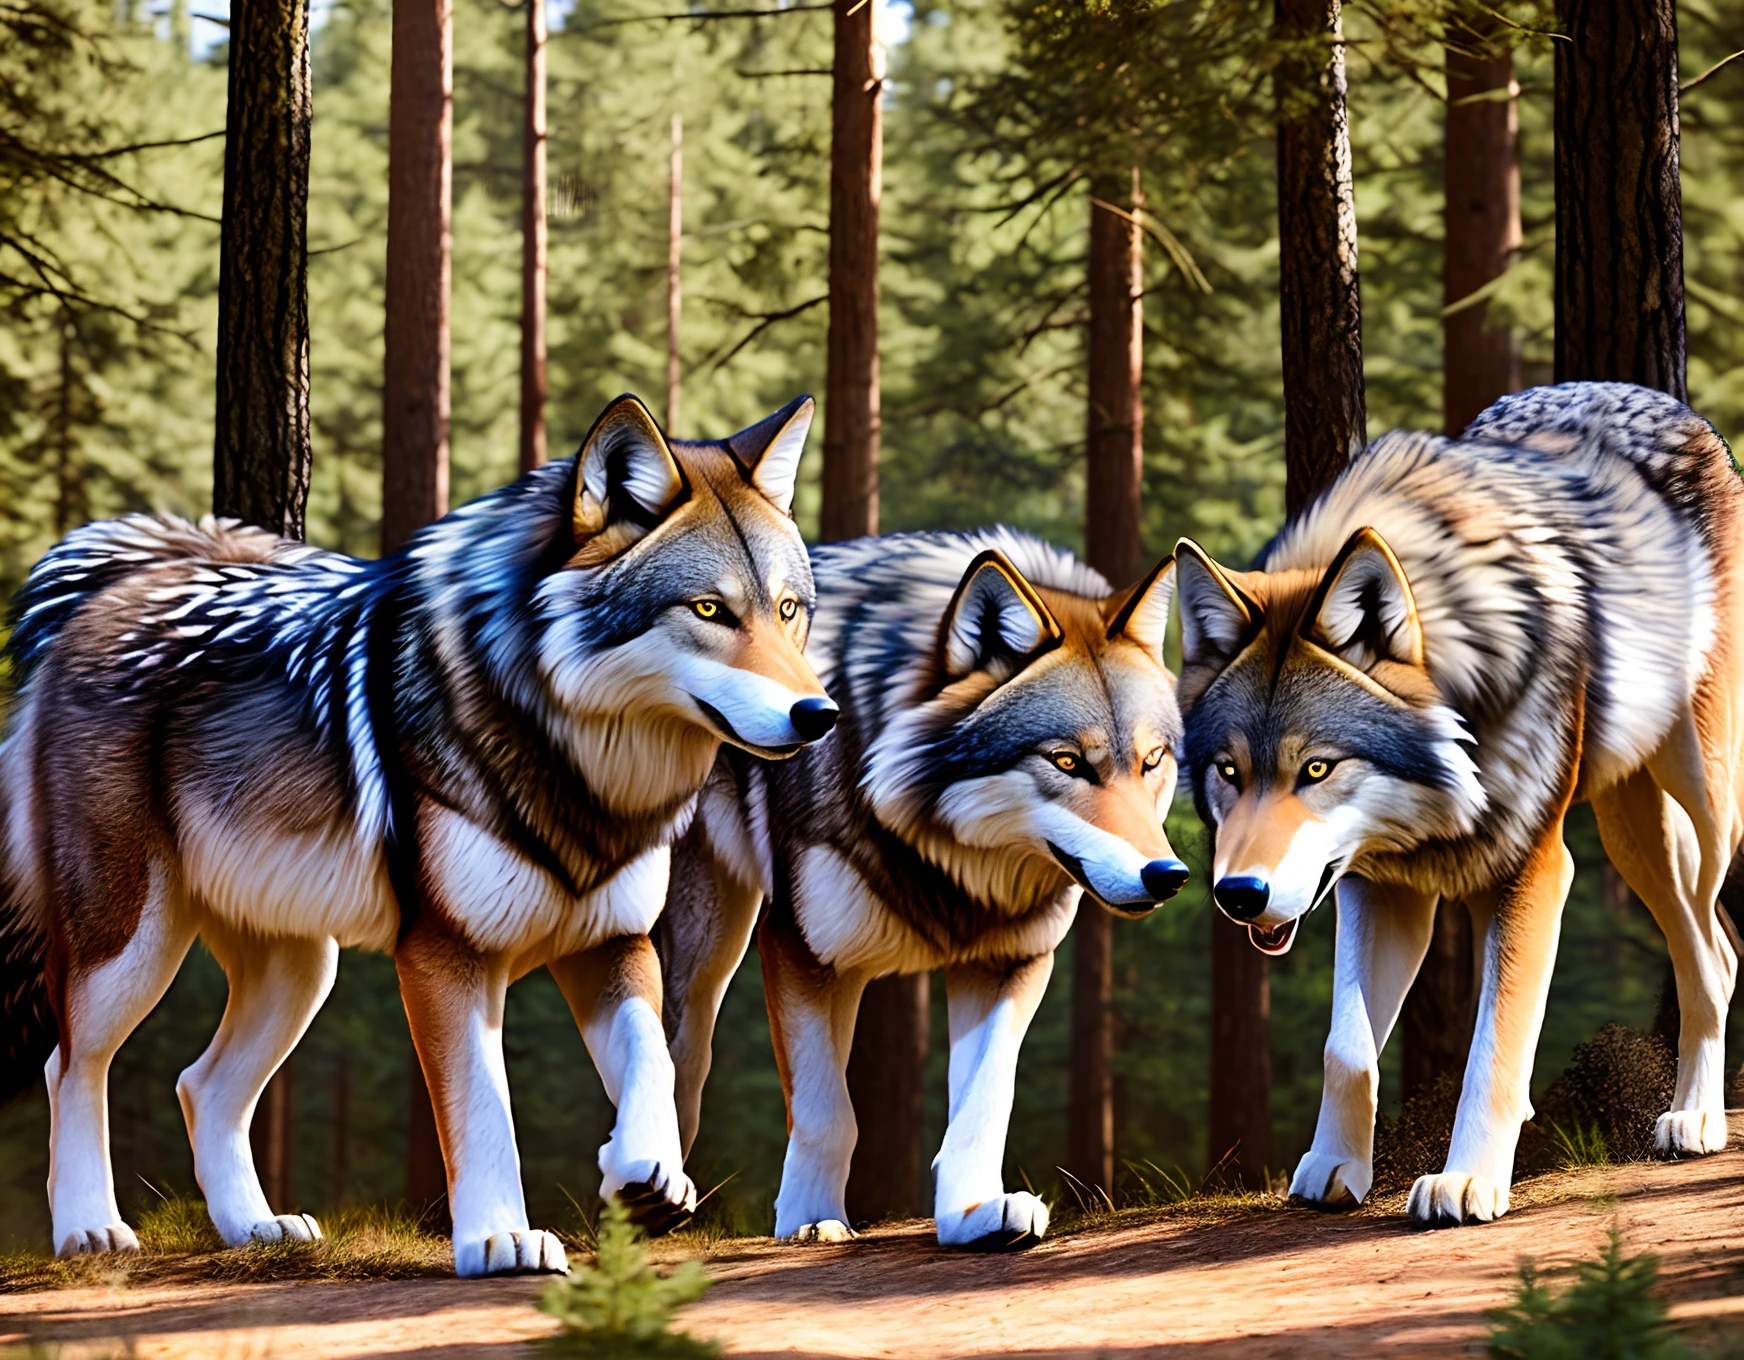 Wald, Dynamisch, hyperrealistische Jagdszene eines Wolfsrudels mit starkem Fellrealismus, in ultra-hochauflösender 4K-Qualität.